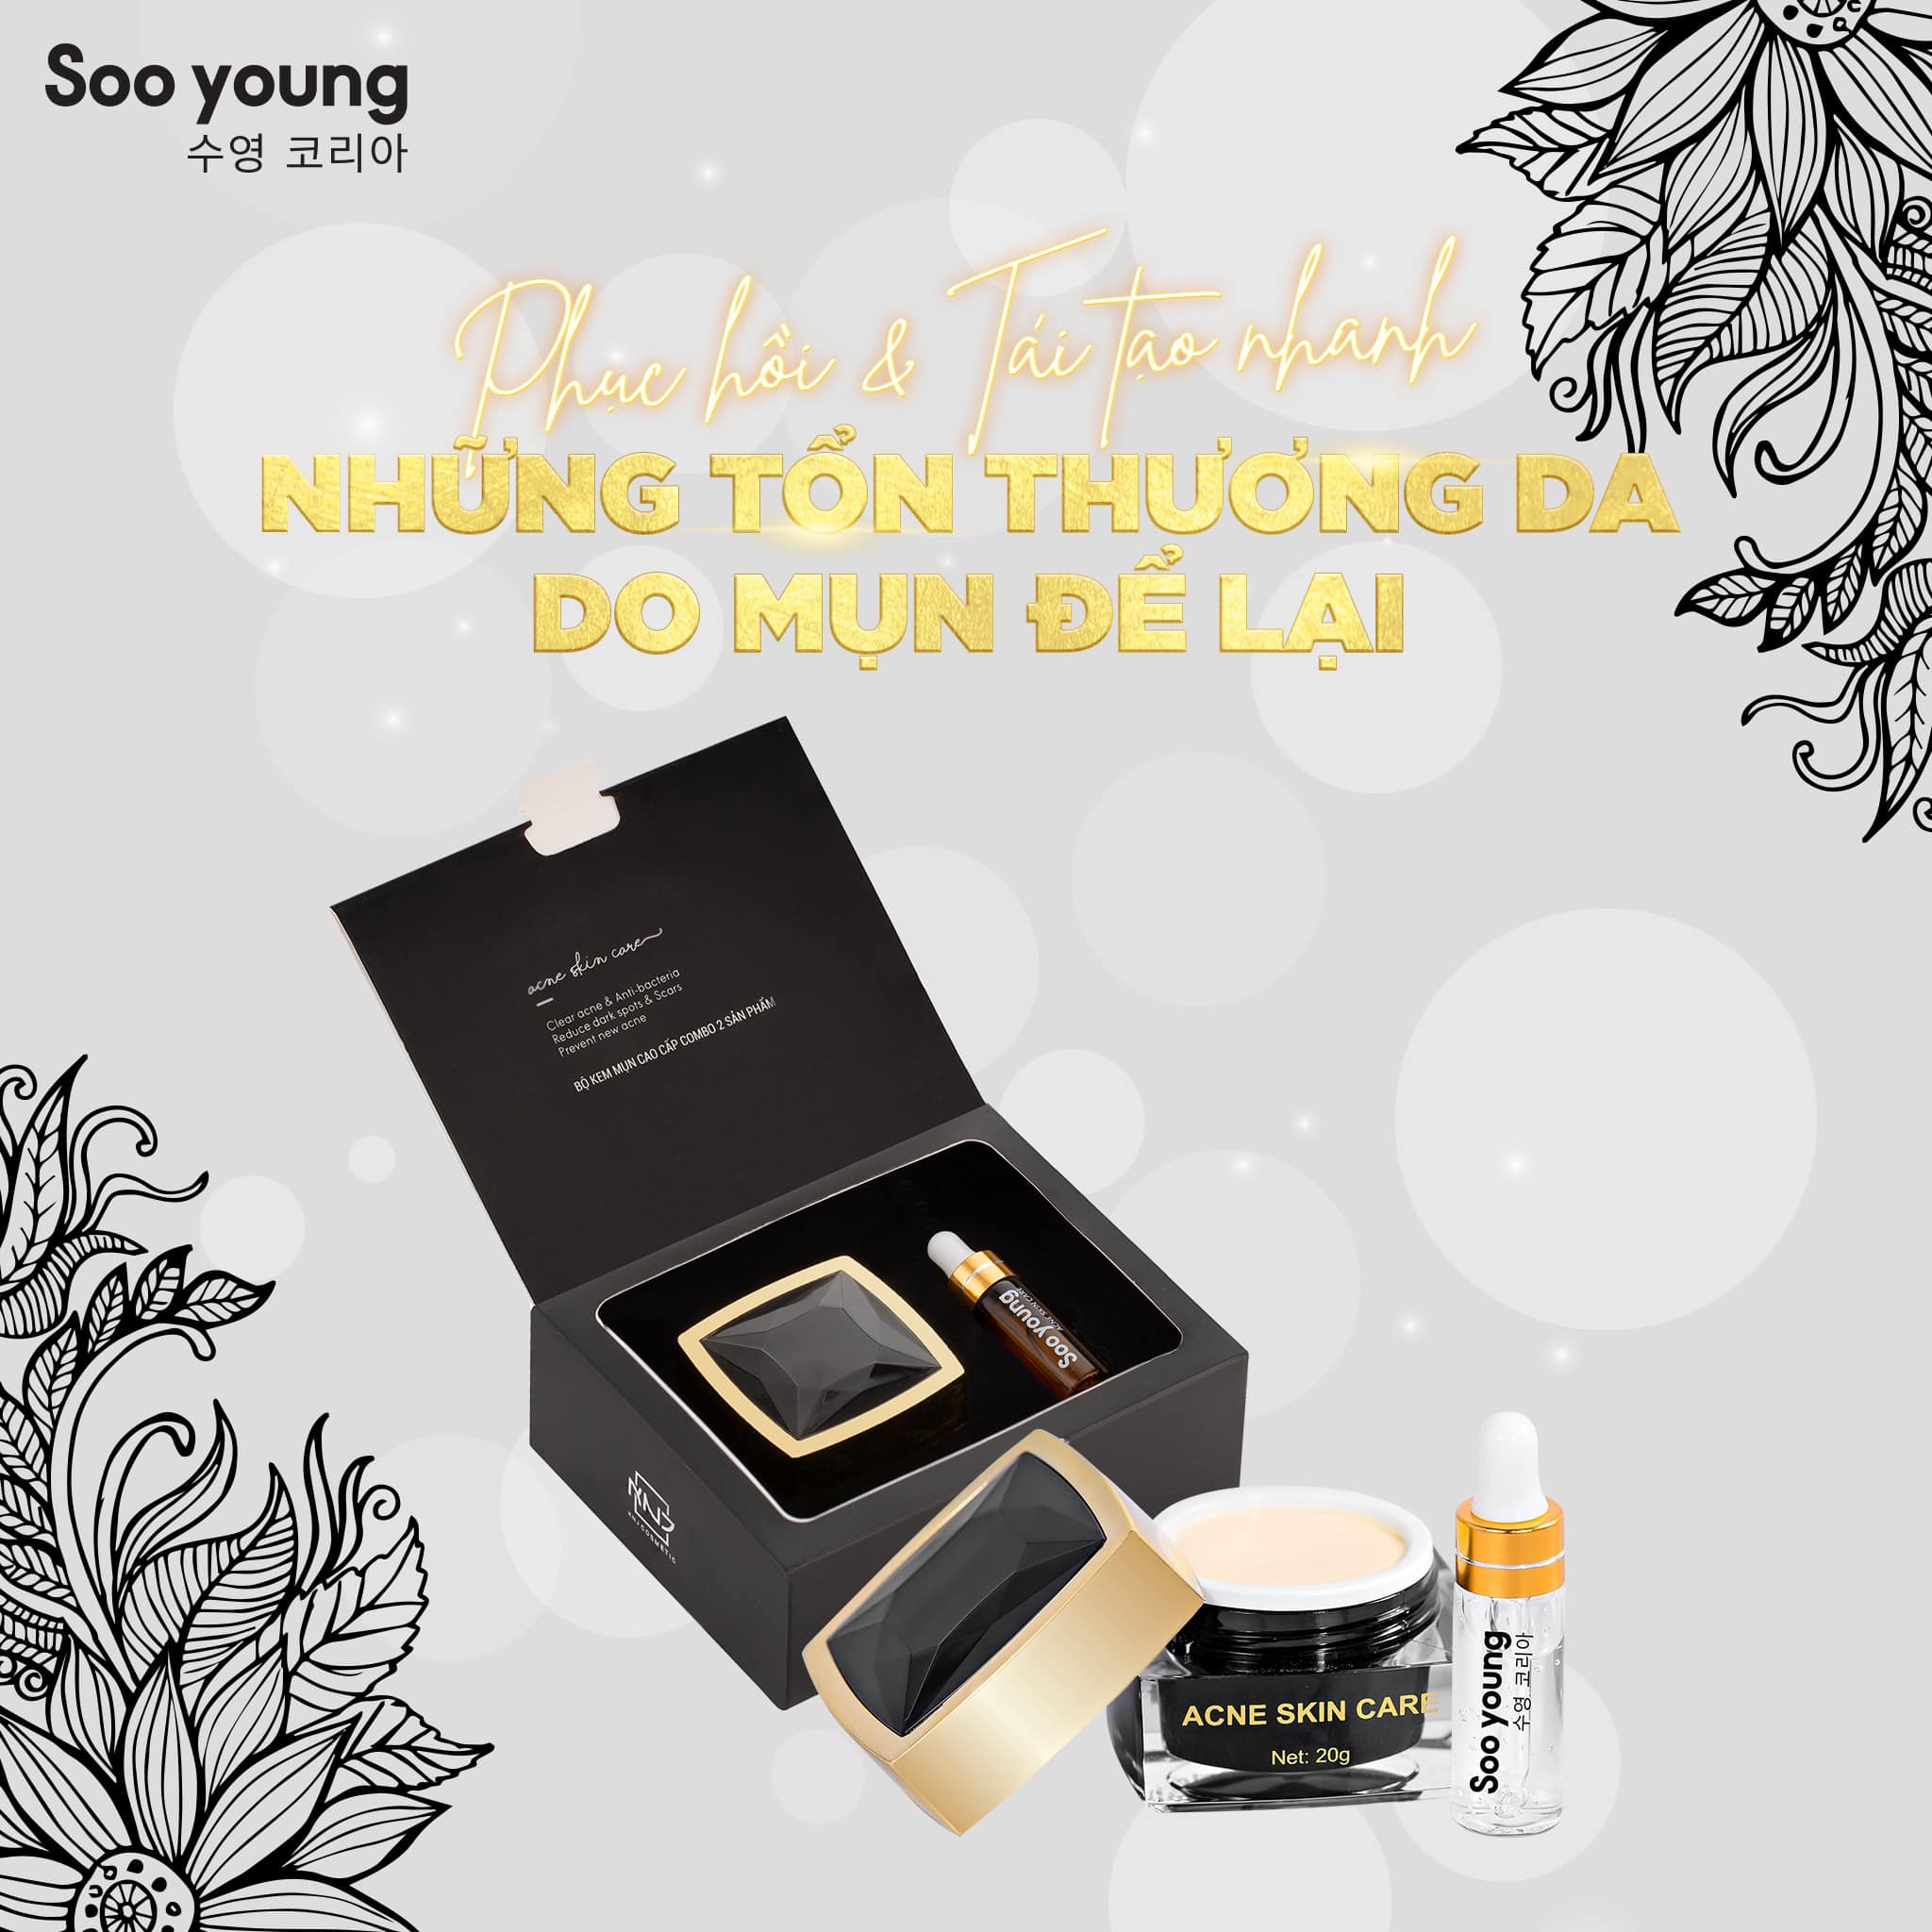 Combo kem và serum mụn Soo Young chính hãng - 8938532152015